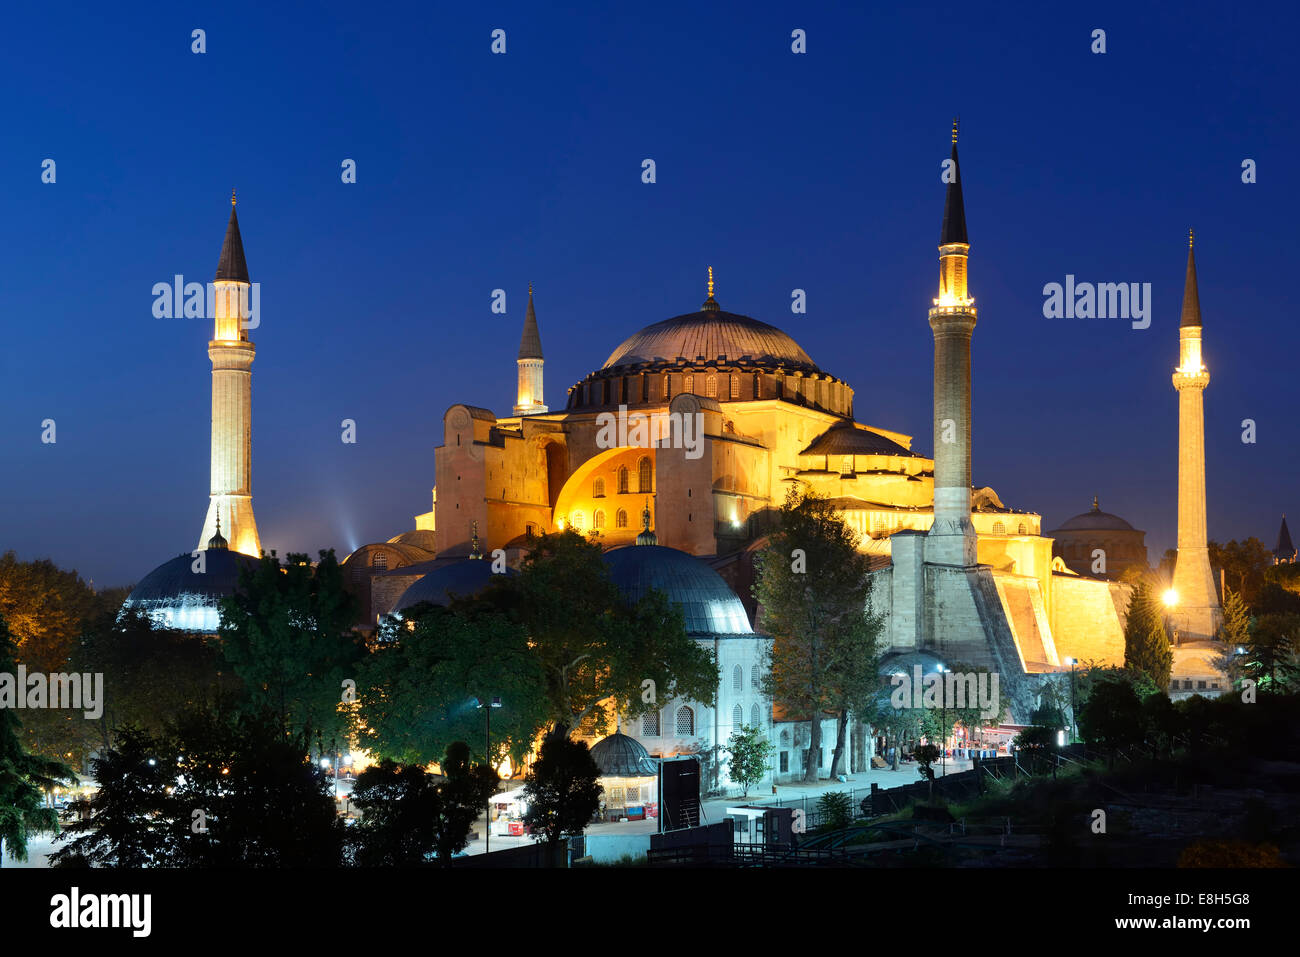 Turkey, Istanbul, Hagia Sofia at night Stock Photo